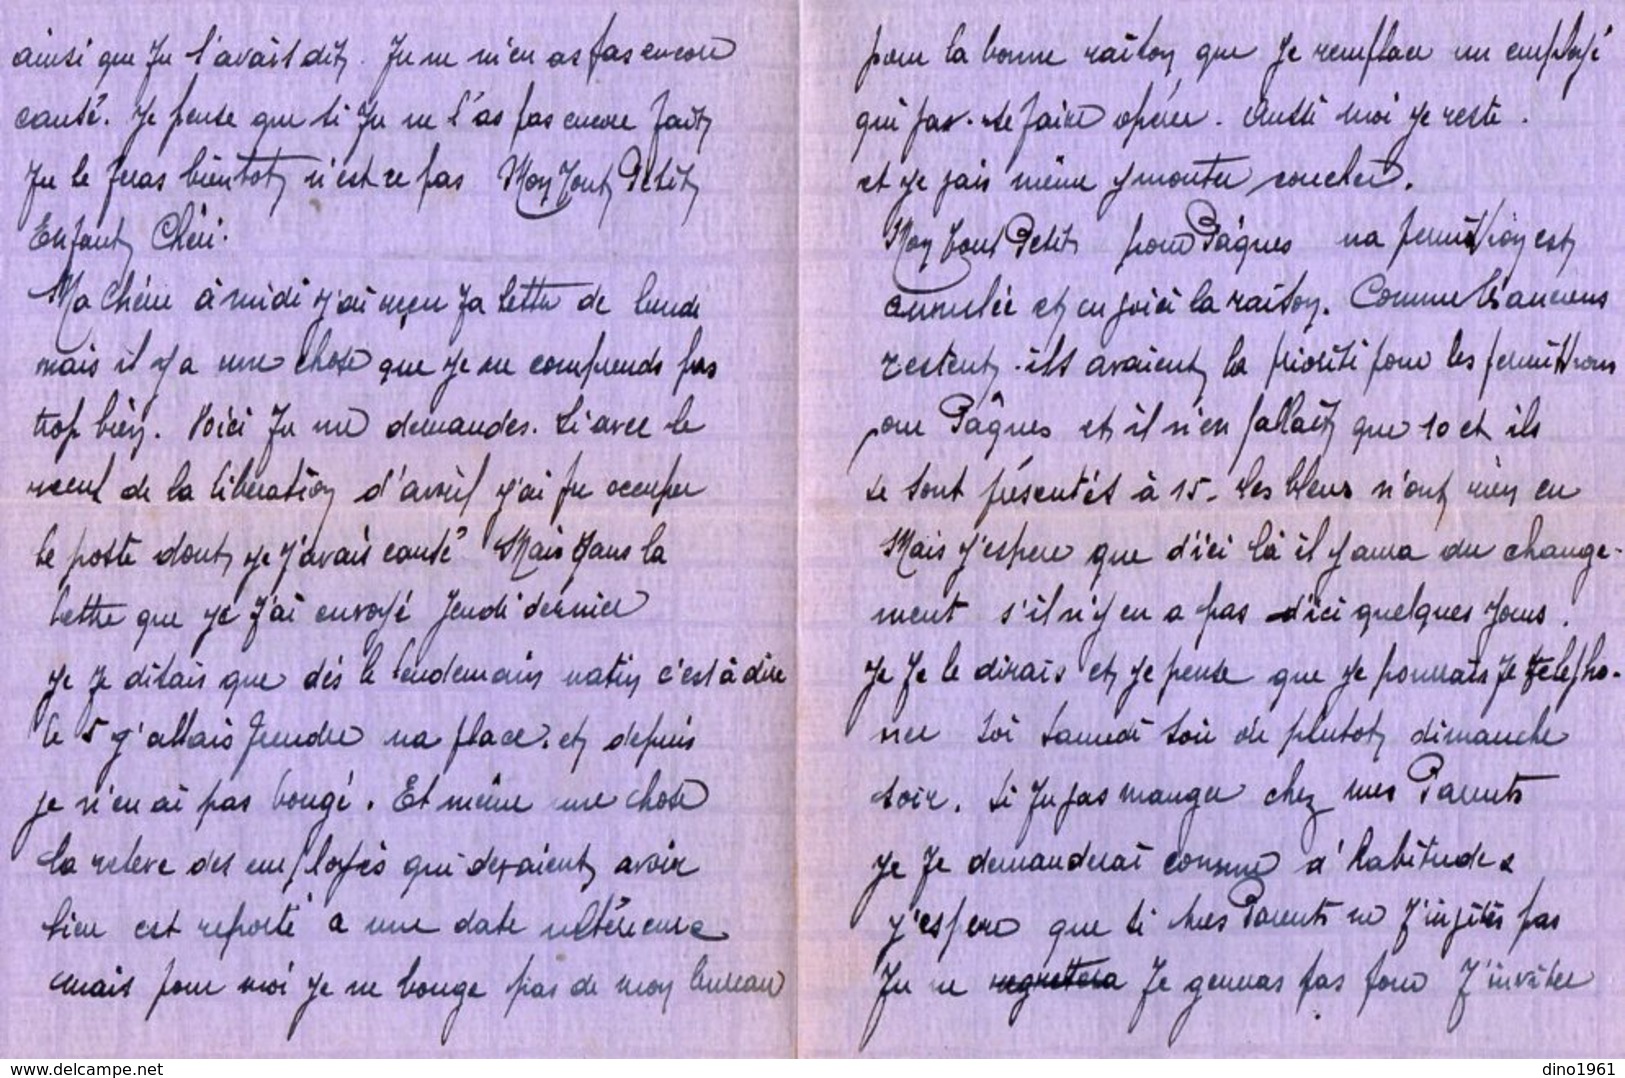 VP13.347 - MILITARIA - 1935 - Lettre D'Amour D'un Artilleur Du 8ème Régiment D'Artillerie à NANCY - Récit - Documents